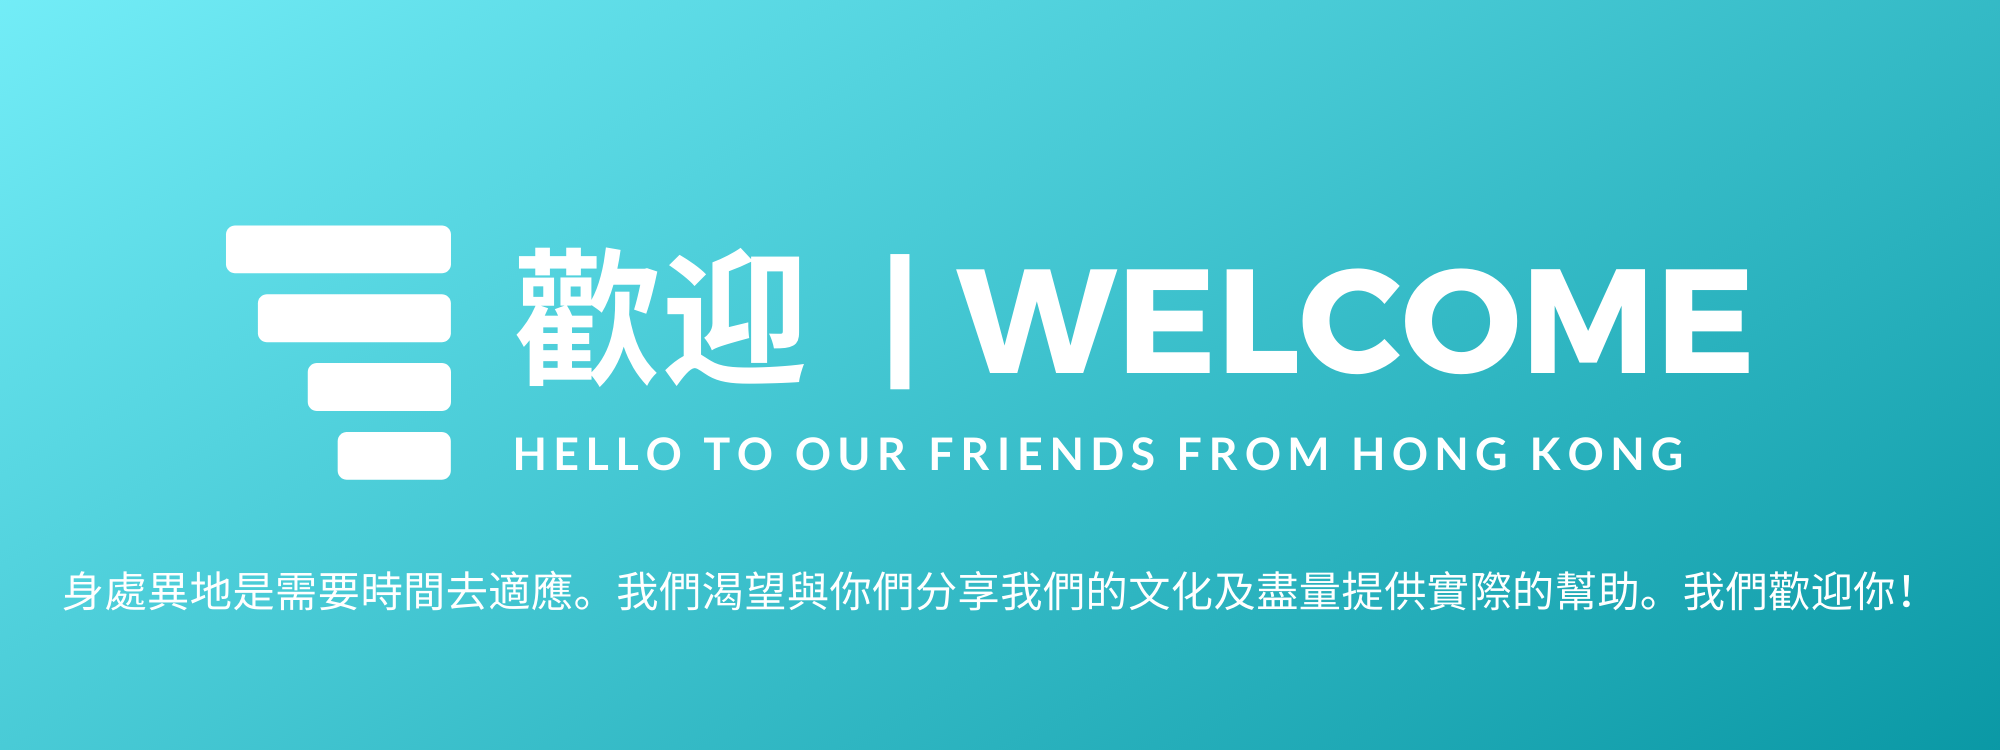 Hong Kong Welcome Website Bann